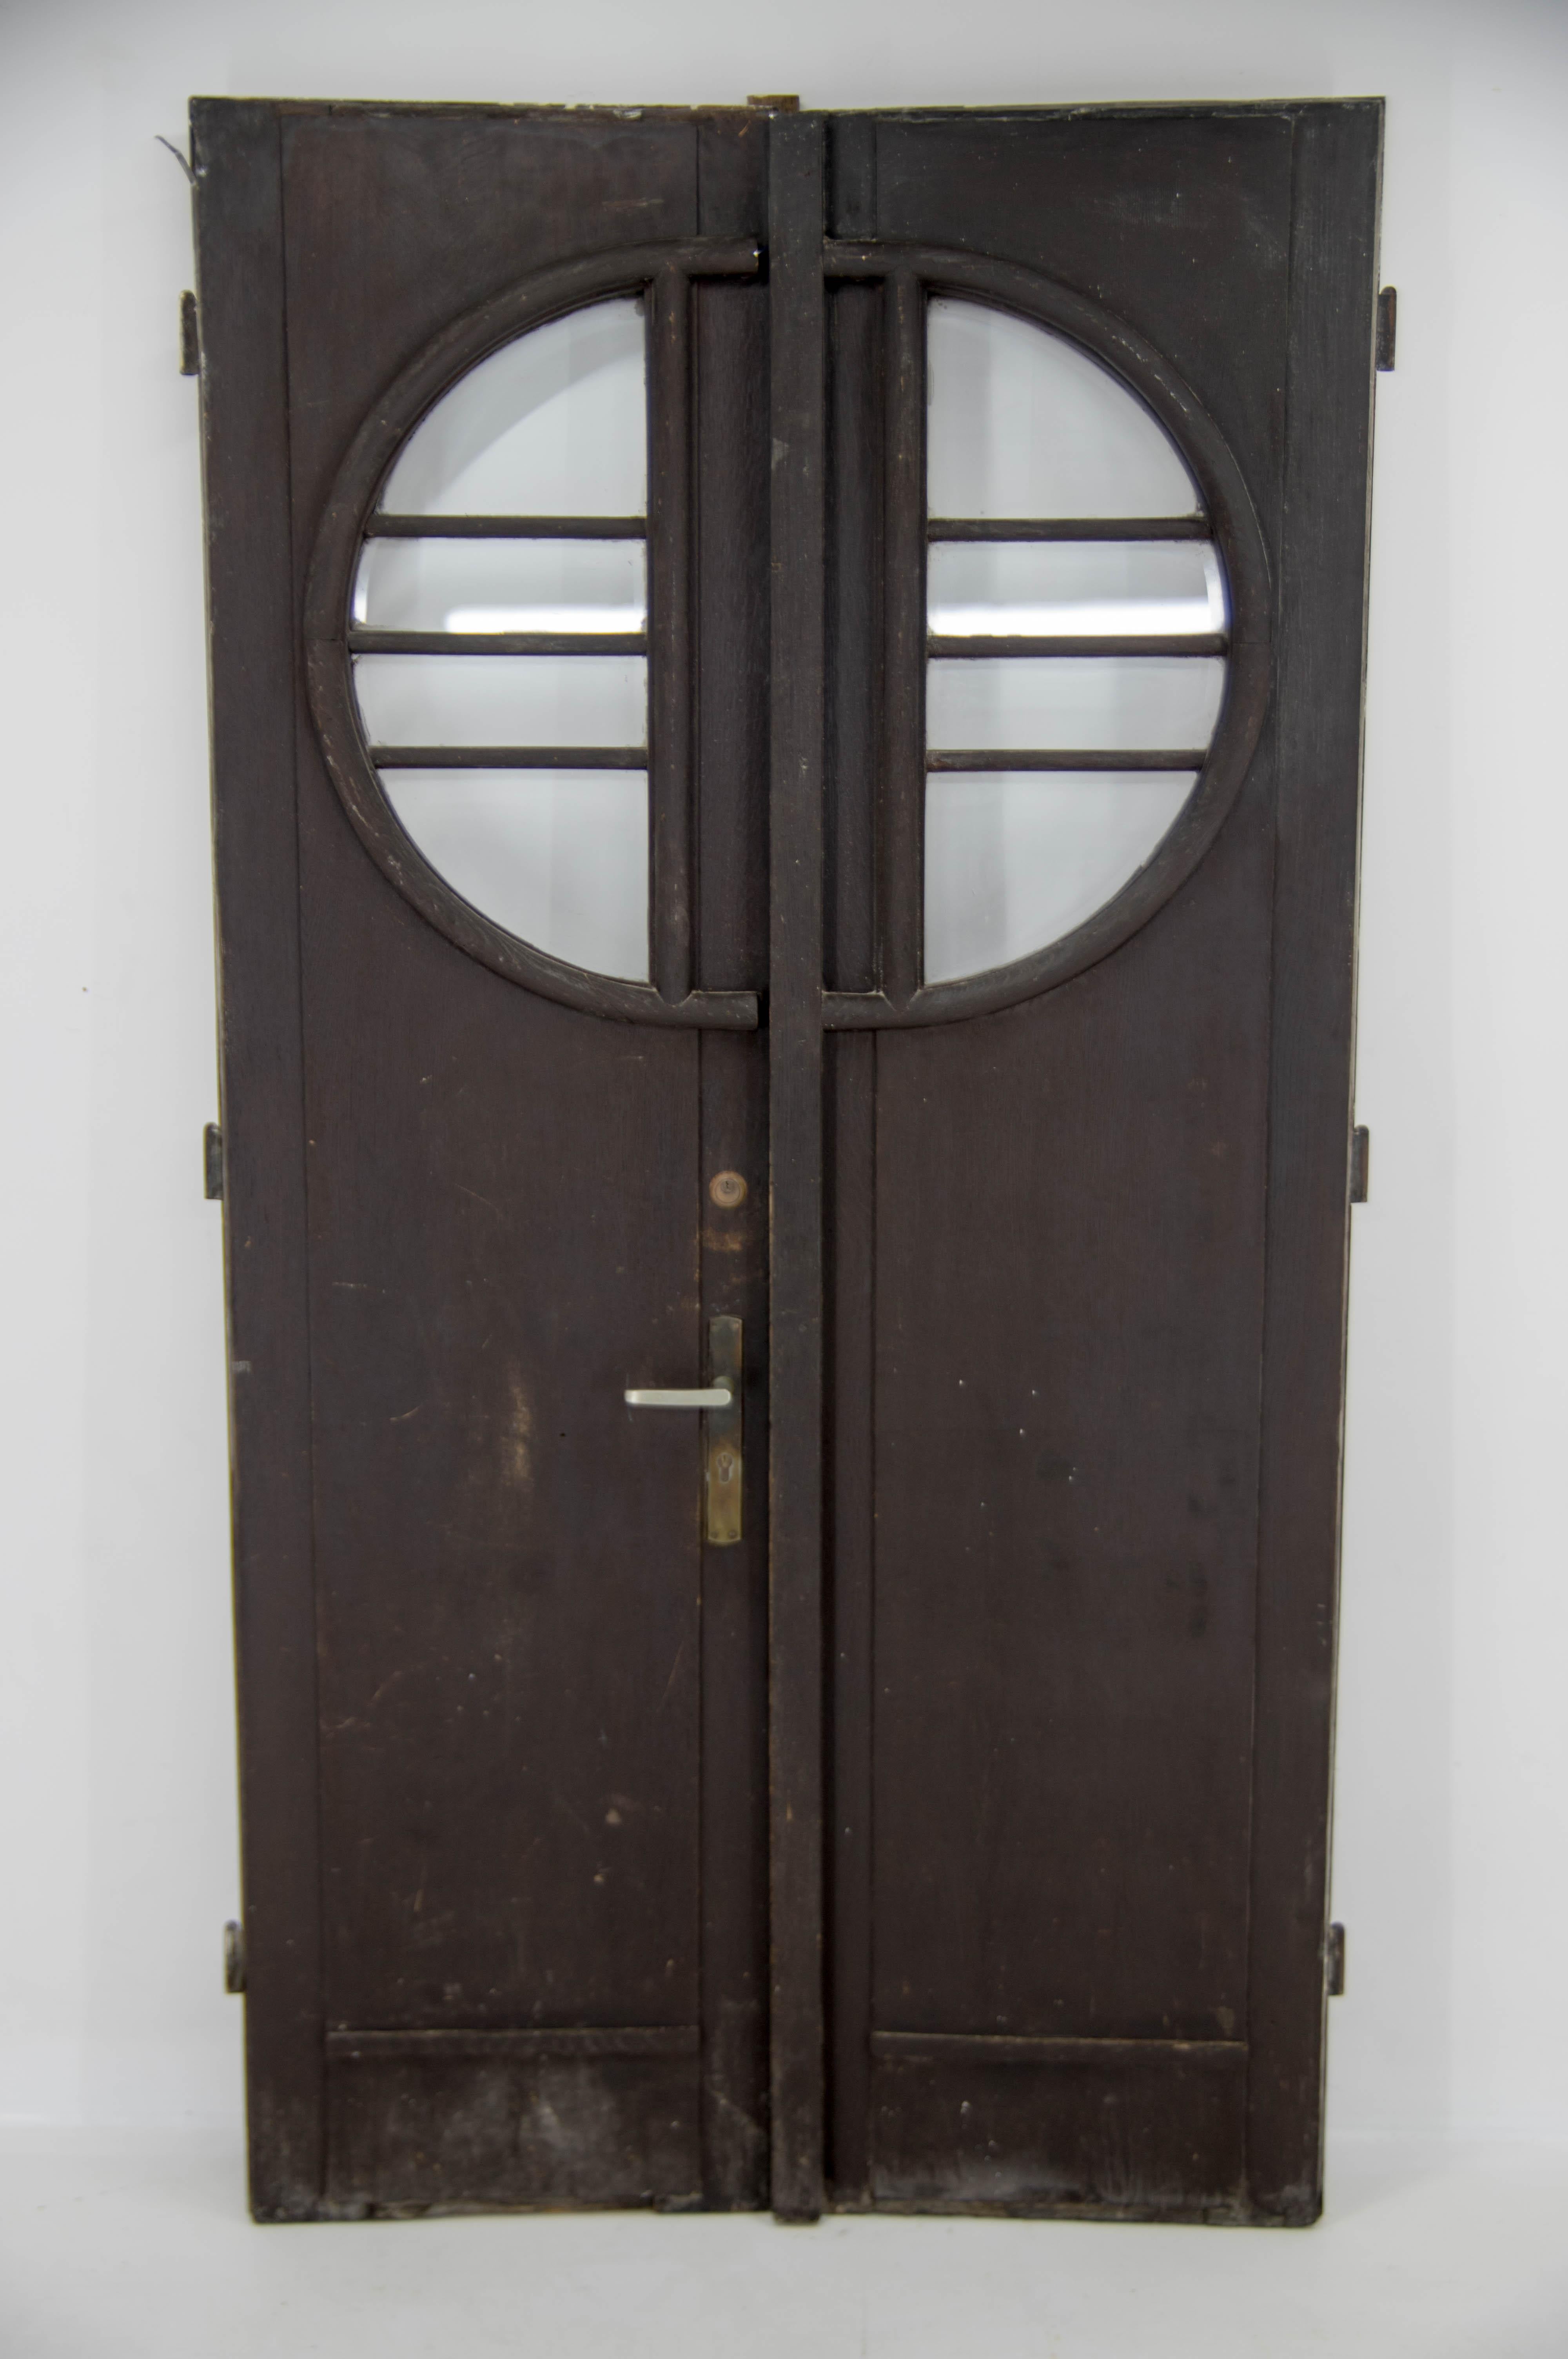 Beautiful custom made Art Deco entrance doors from 1930s
Including frame with hinges.
Including original aluminum seals.
Original glass.
 